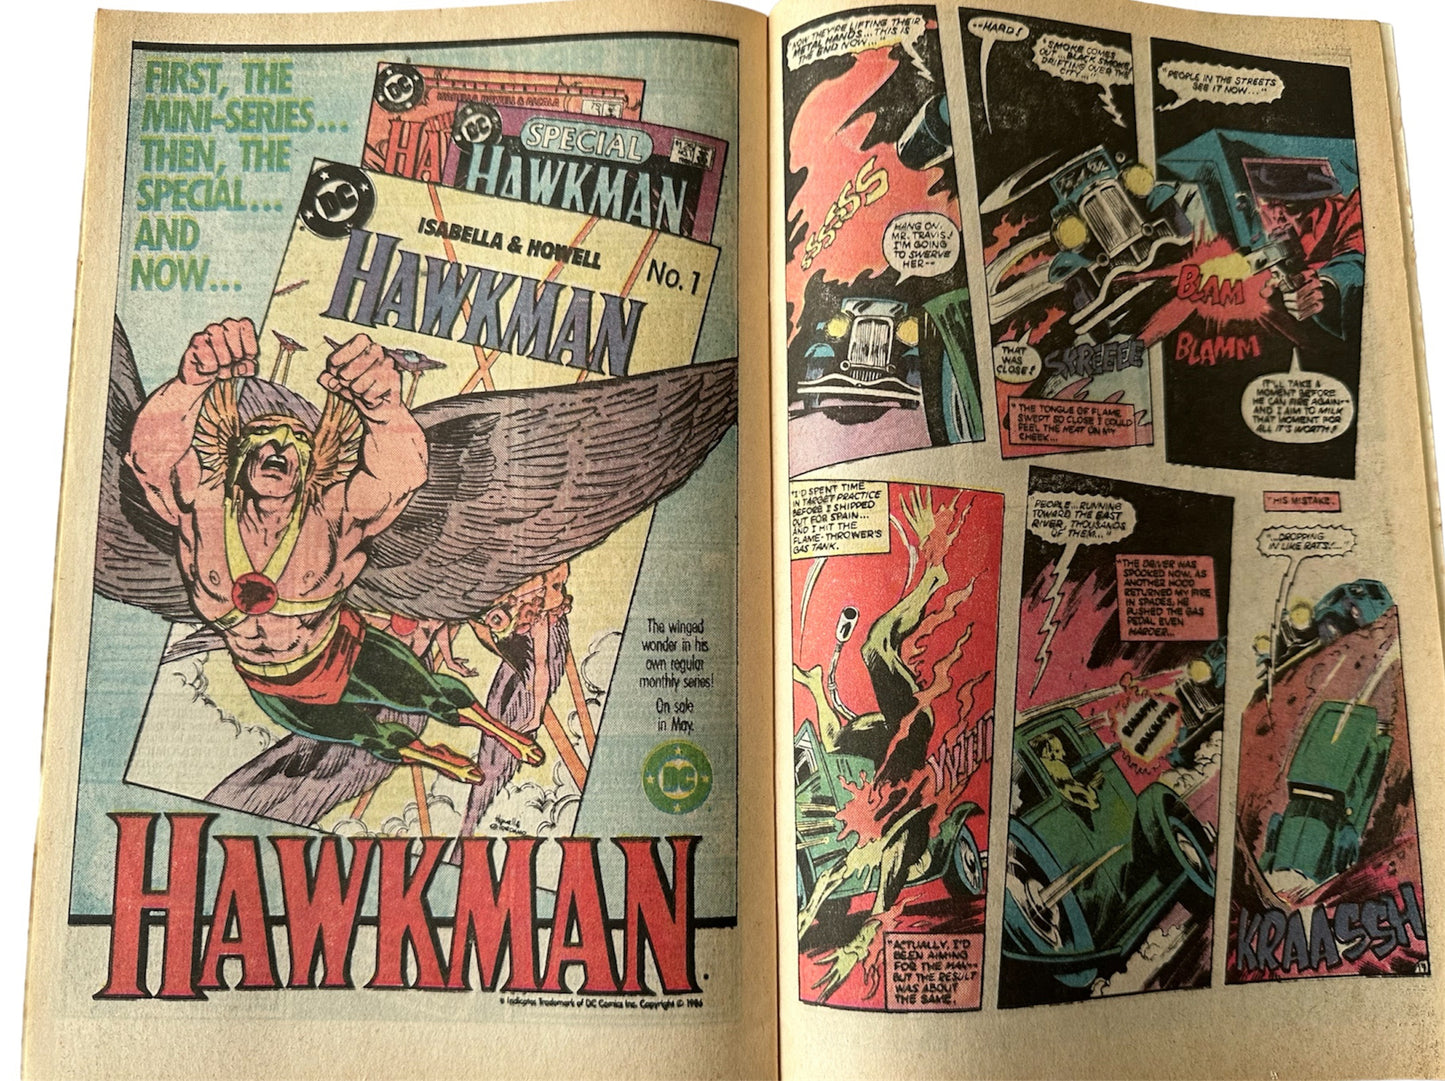 Vintage 1986 DC - Secret Origins Comic Issue Number 5 - Starring The Grimson Avenger - Shop Stock Room Find